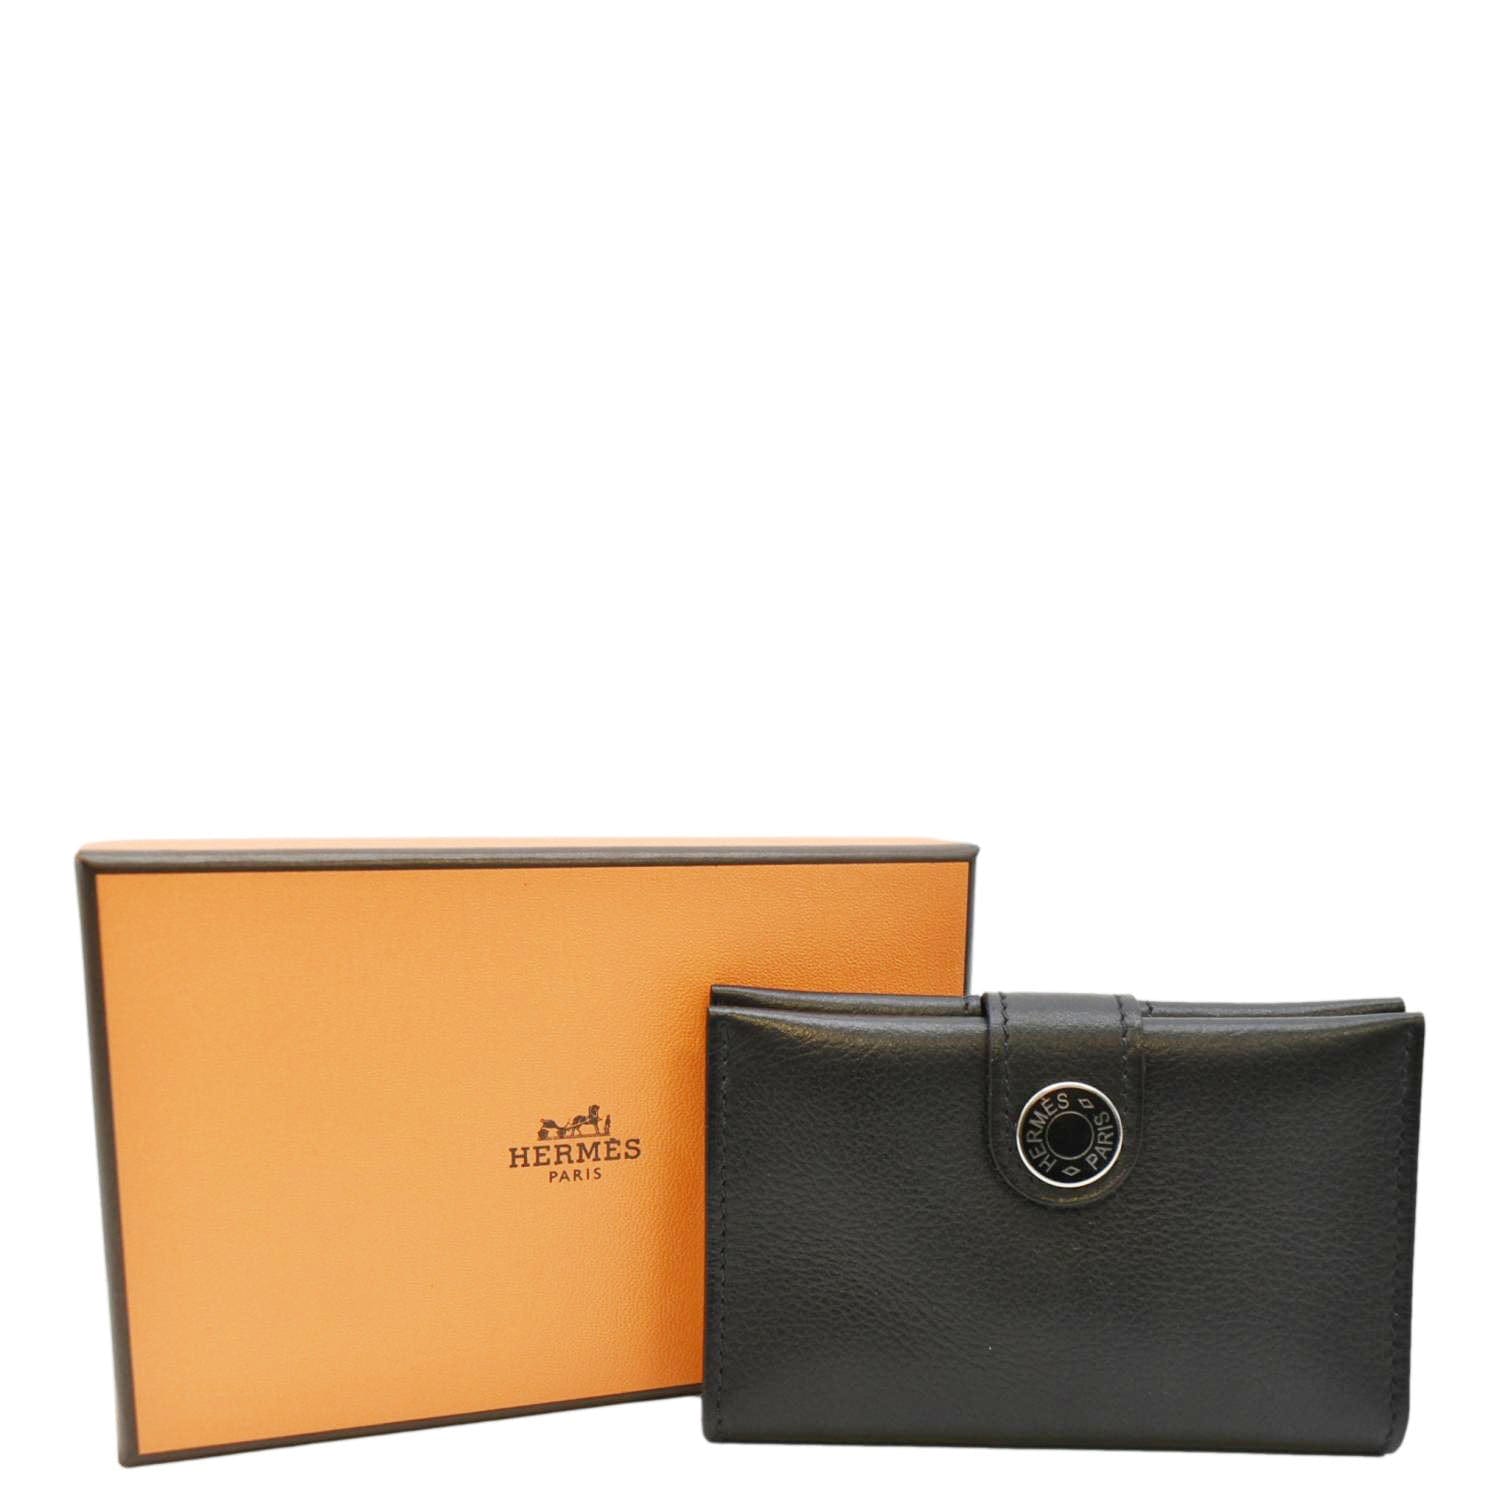 Hermes Leather Card Holder Wallet